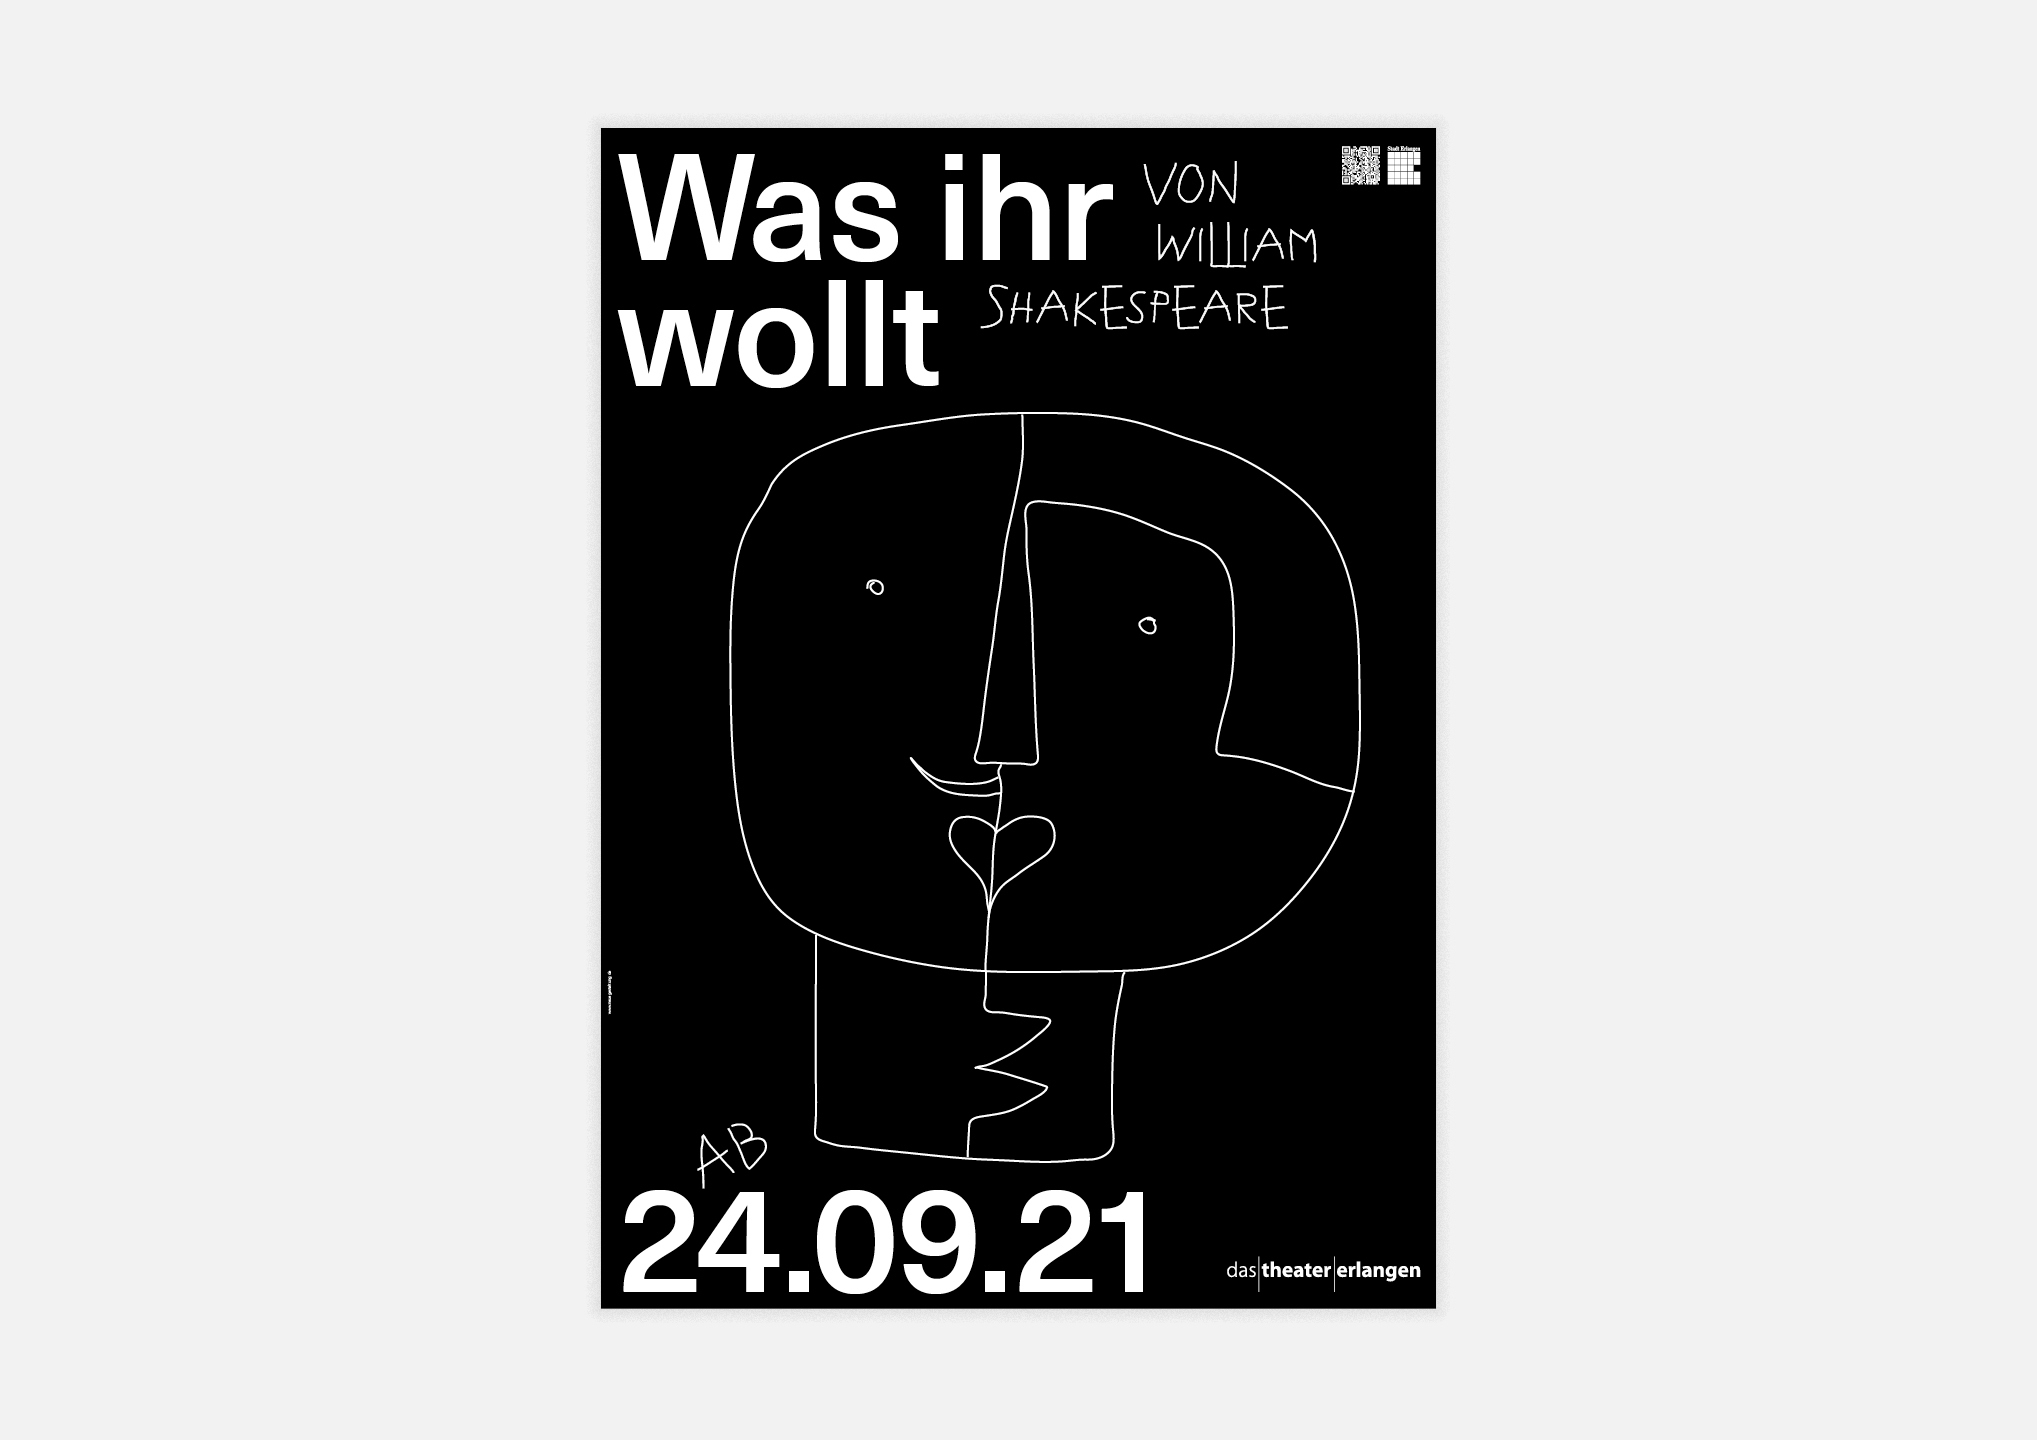 Theater Erlangen – Poster series